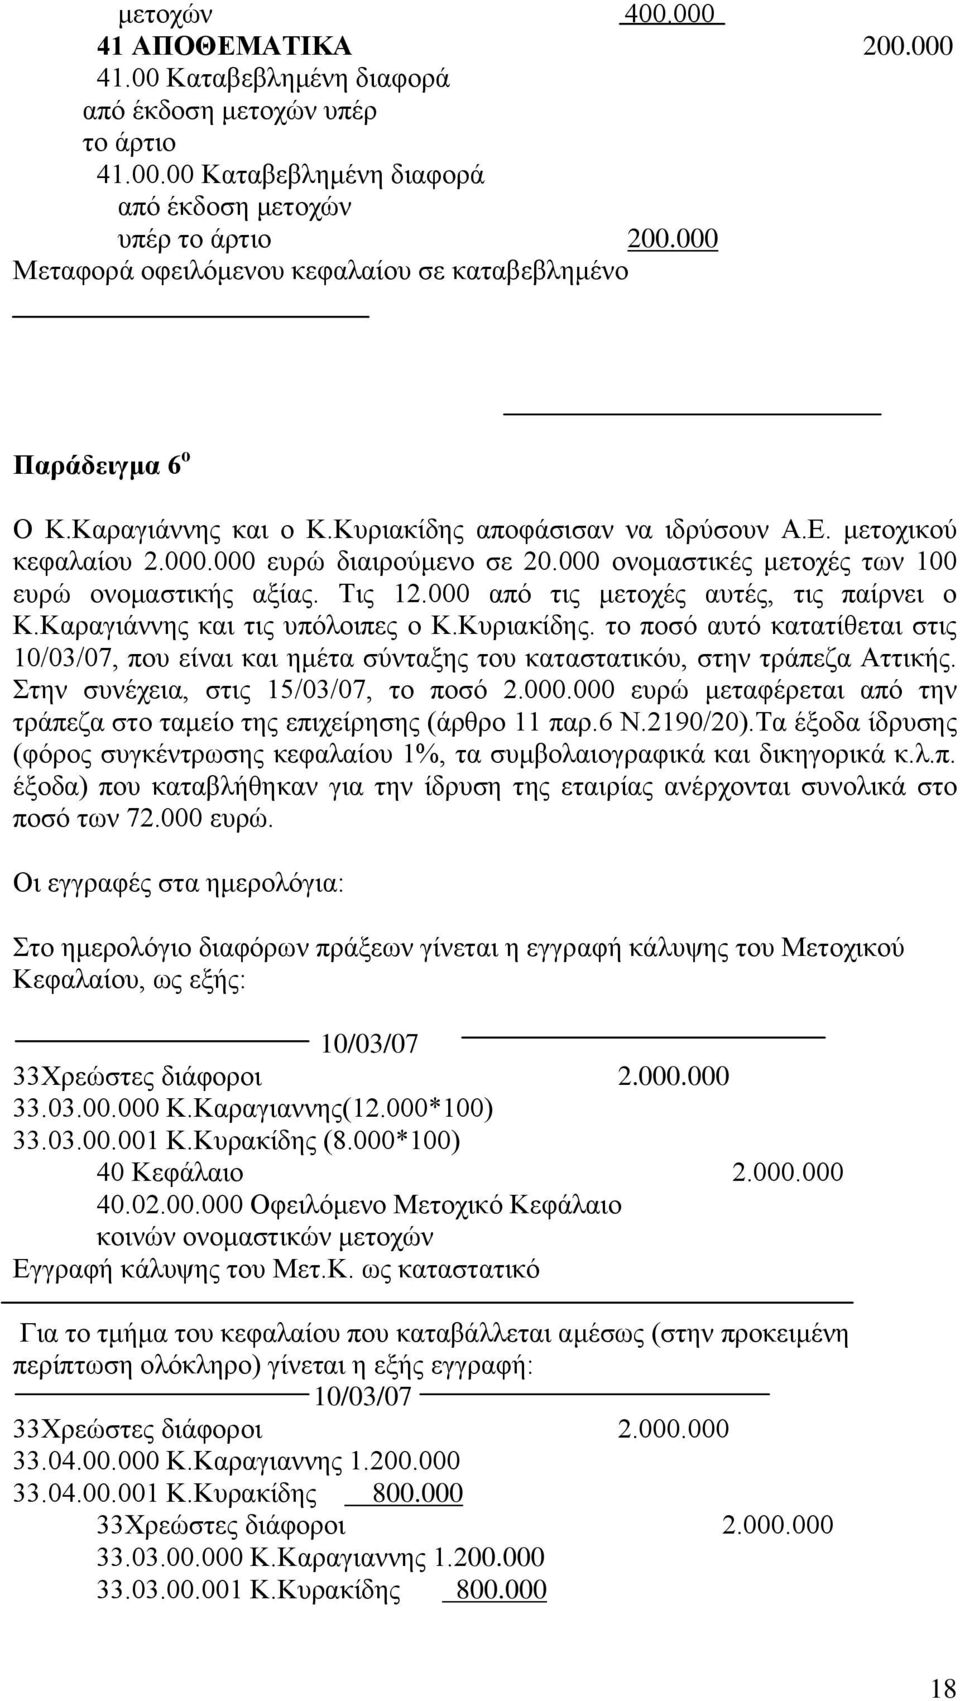 000 ονομαστικές μετοχές των 100 ευρώ ονομαστικής αξίας. Τις 12.000 από τις μετοχές αυτές, τις παίρνει ο Κ.Καραγιάννης και τις υπόλοιπες ο Κ.Κυριακίδης.